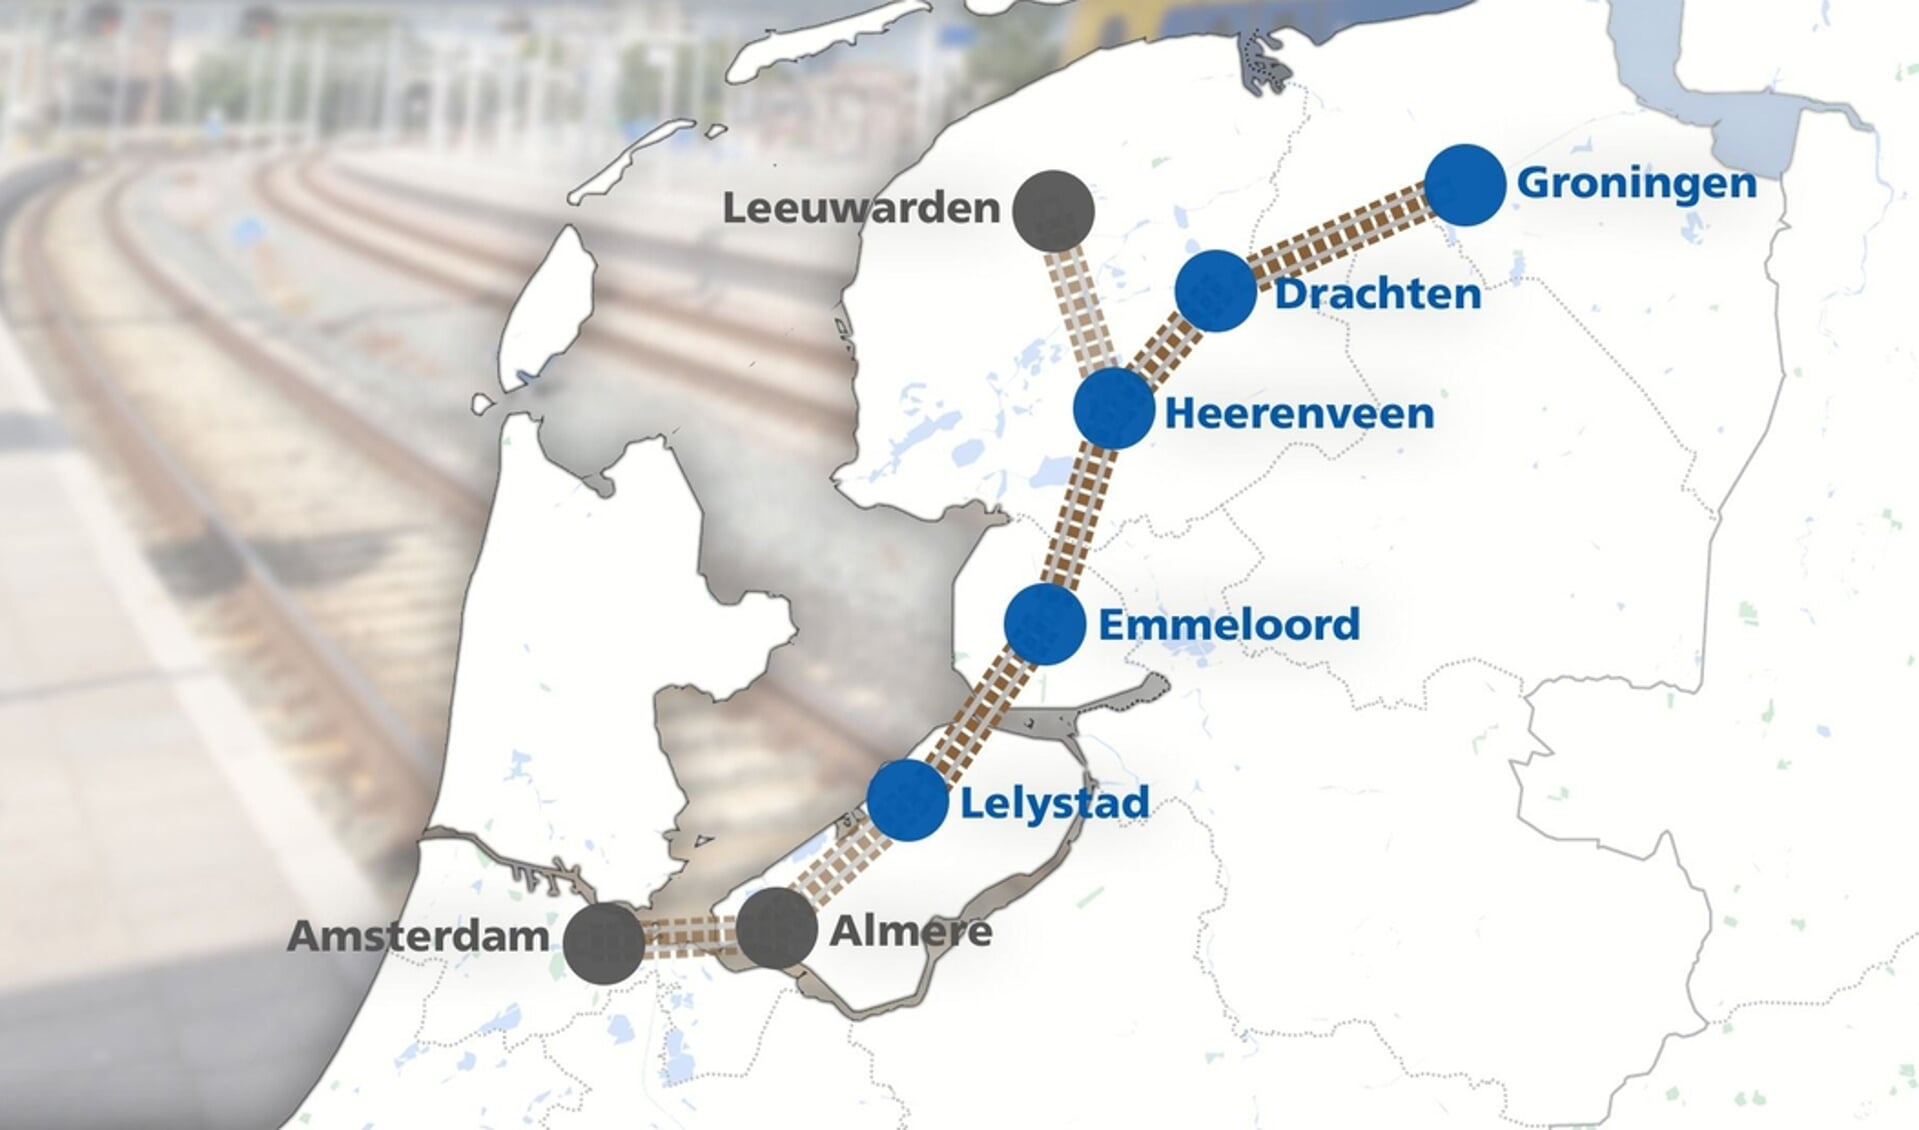 xDe Nederlandse stations die een aansluiting op de Lelylijn zouden krijgen. In het Europese plan loopt het spoor verder van Groningen naar Bremen. Afbeelding Omrop Fryslân